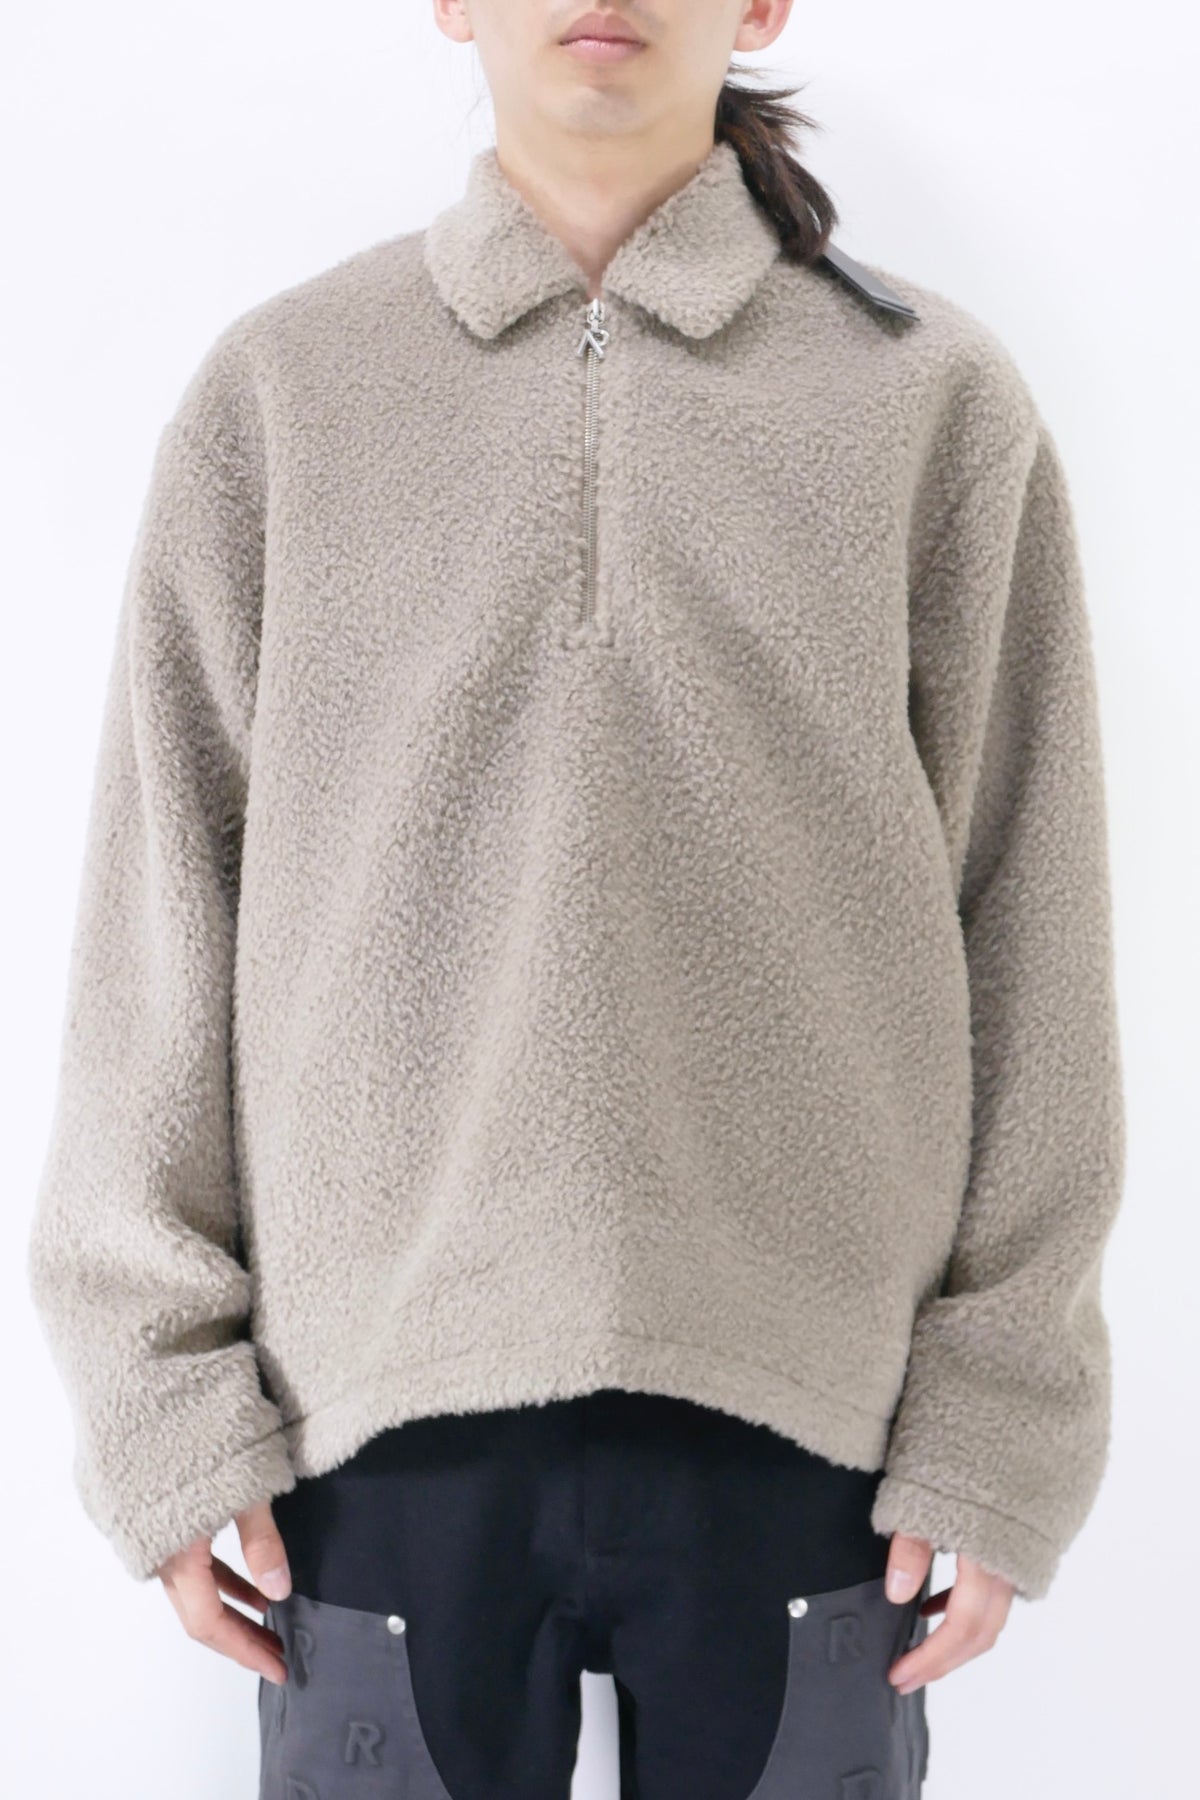 Represent Fleece Pullover Jacket - Mushroom